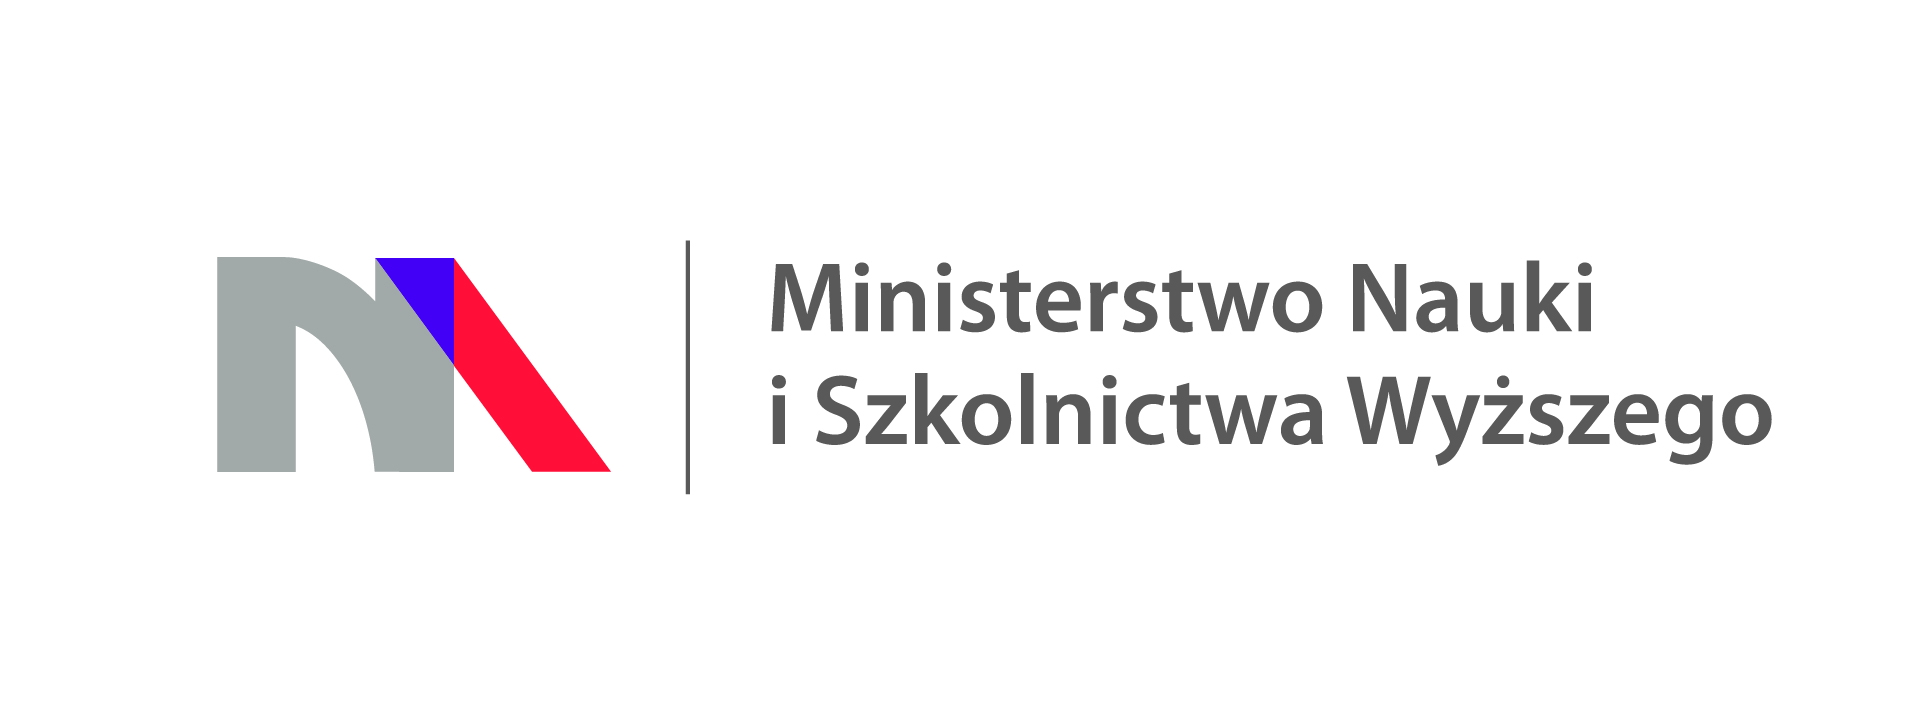 Obrazek przedstawia logo Ministerstwa Nauki i Szkolnictwa Wyższego na białym tle.